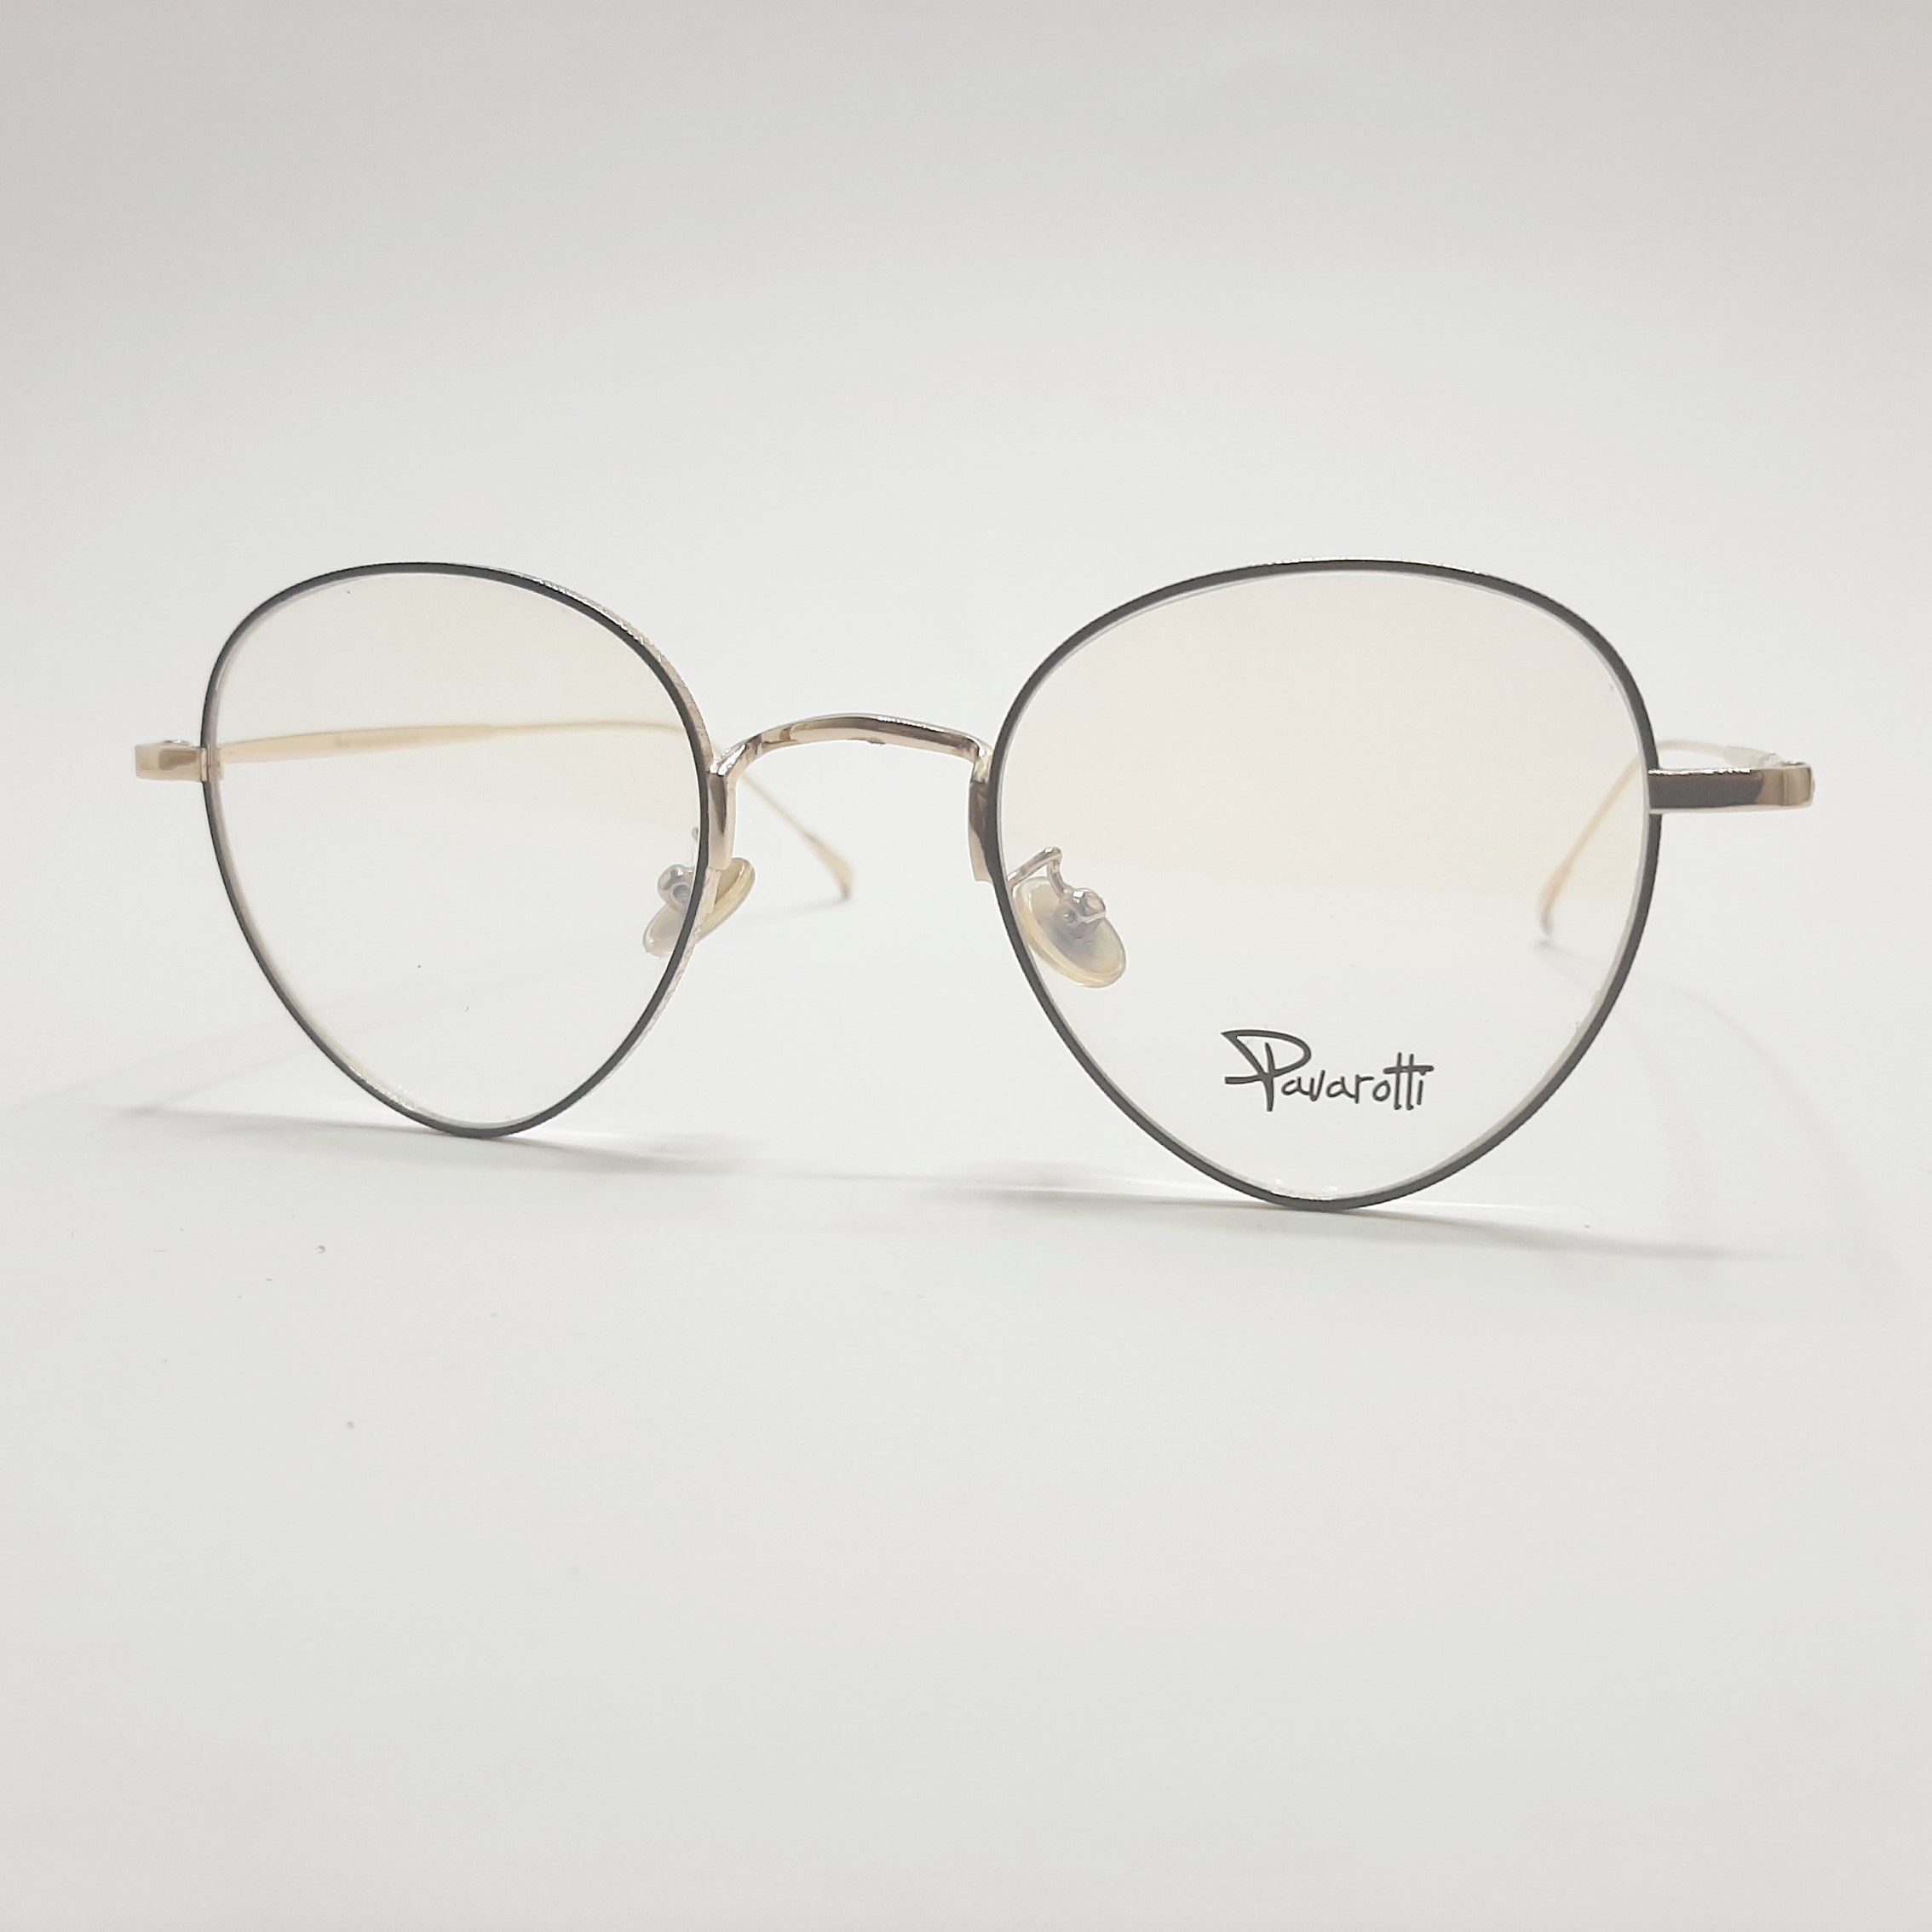 فریم عینک طبی پاواروتی مدل P52059c6 -  - 3